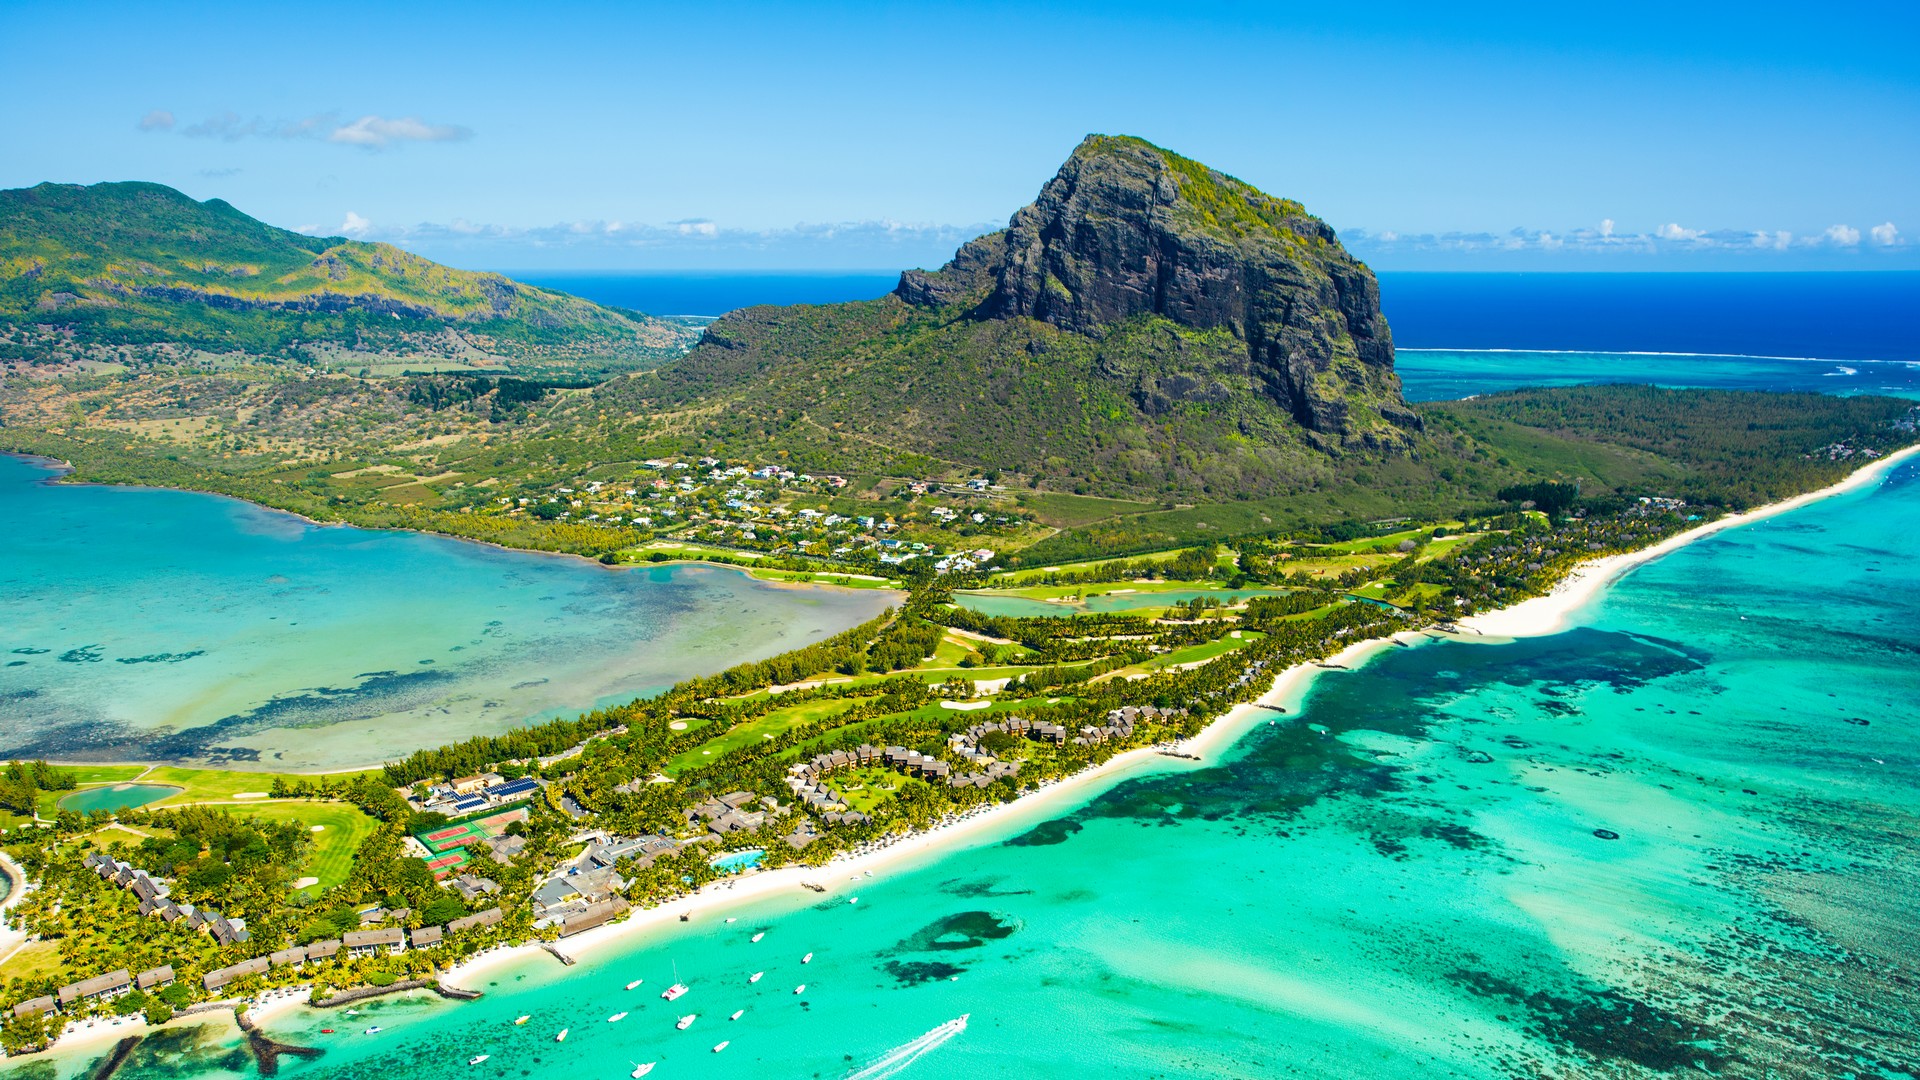 Vista aerea de Mauricio